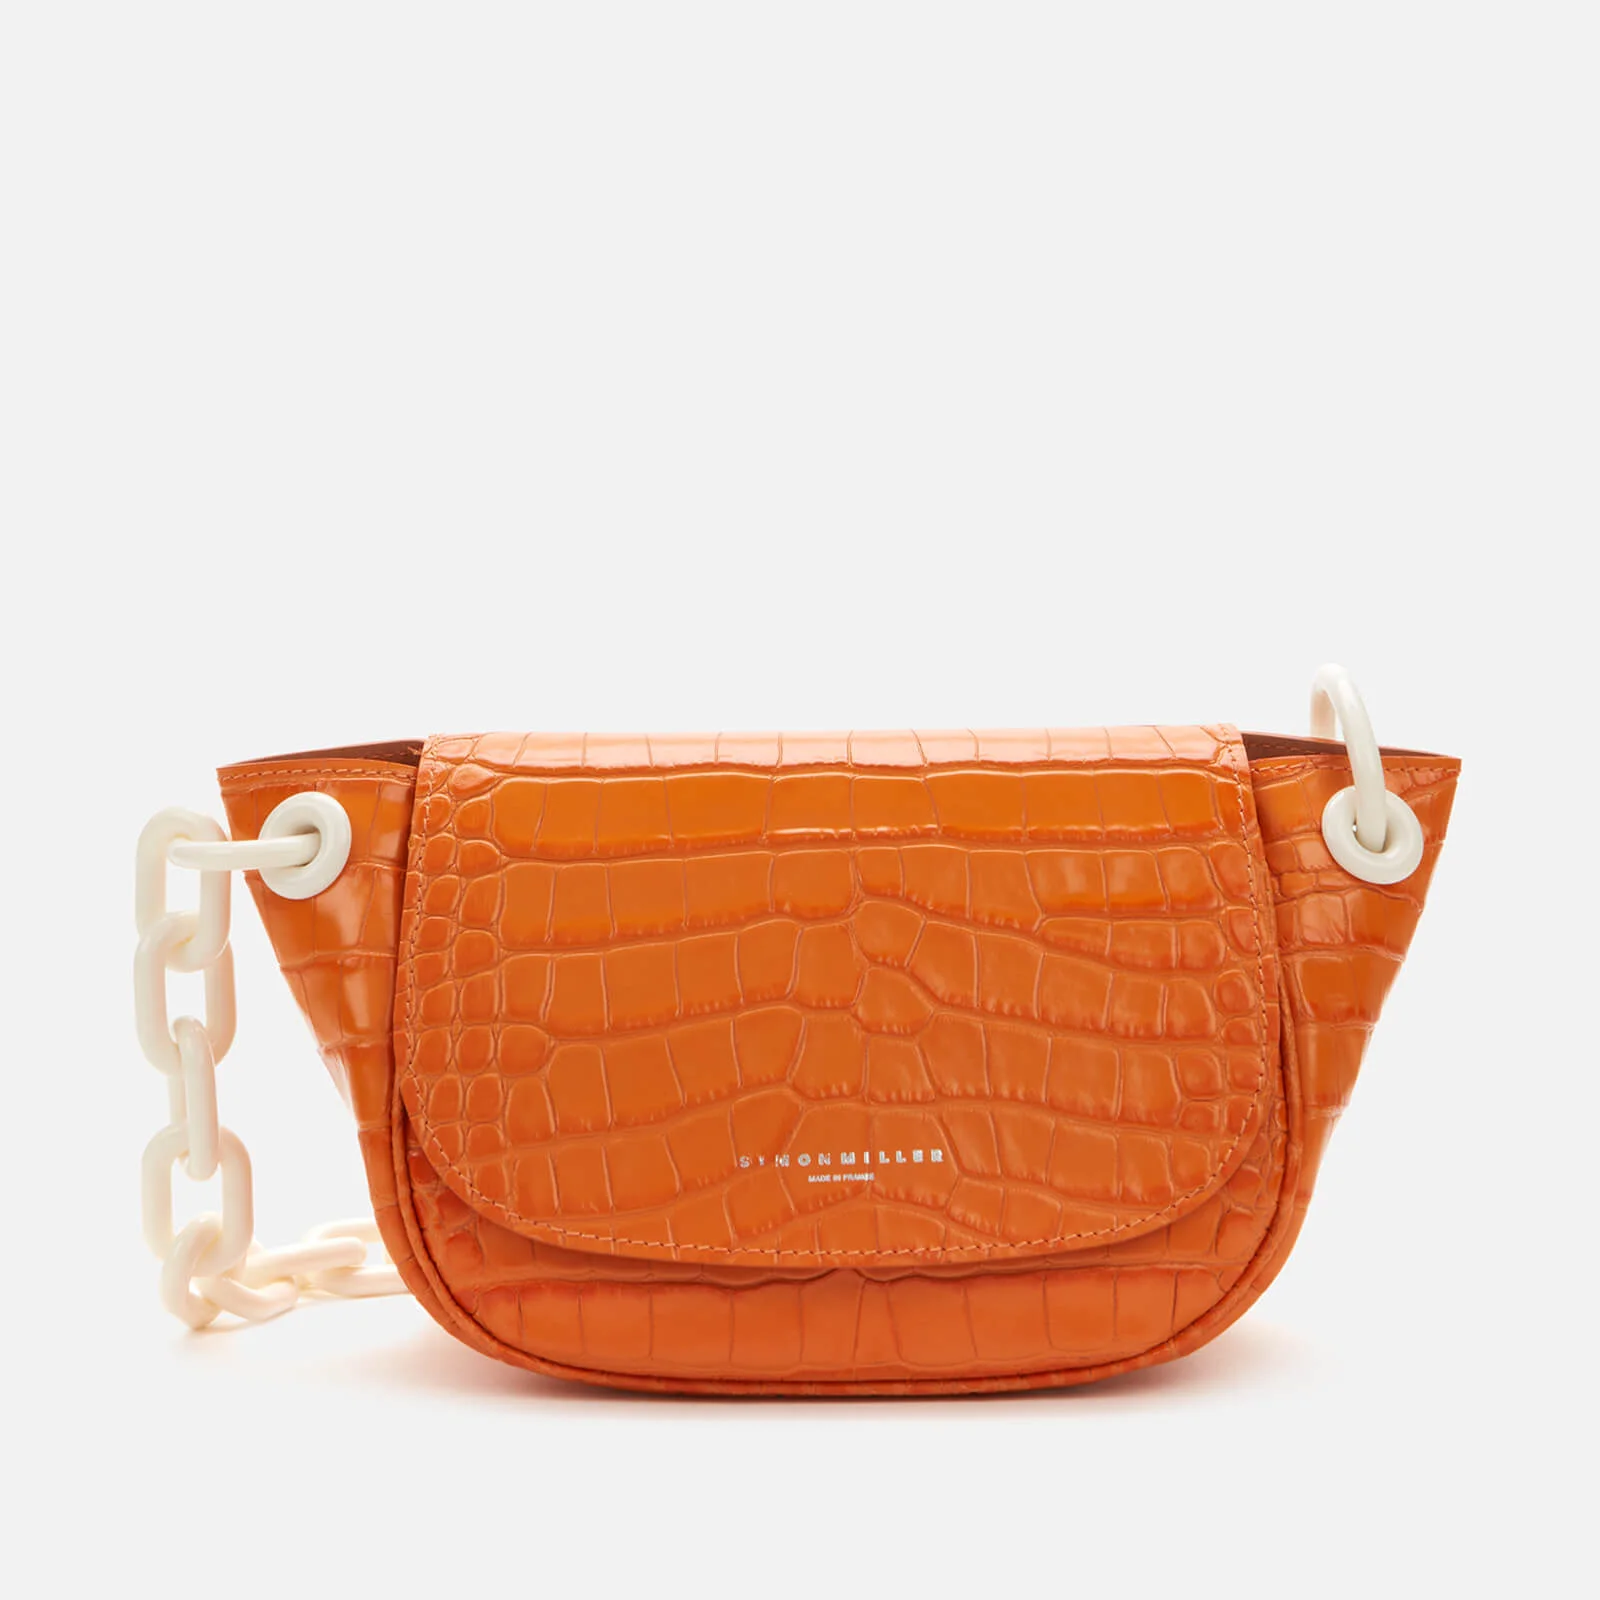 Simon Miller Women's Bend Bag - Sponge Orange Image 1